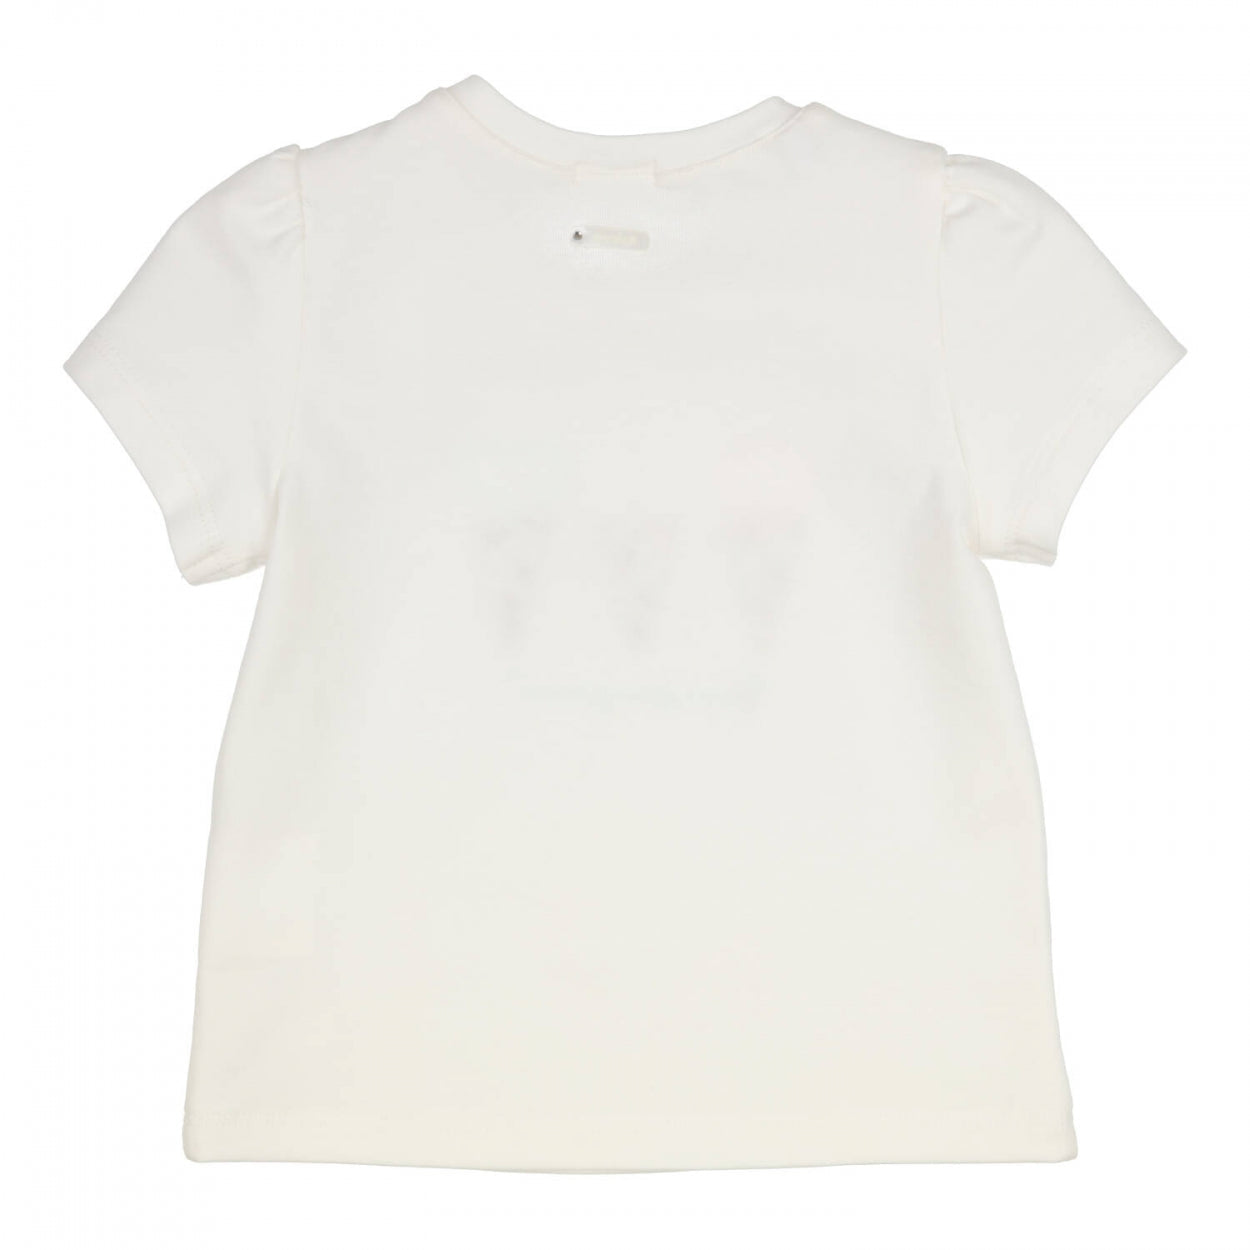 Meisjes T-shirt Aerobic van Gymp in de kleur Off White in maat 86.